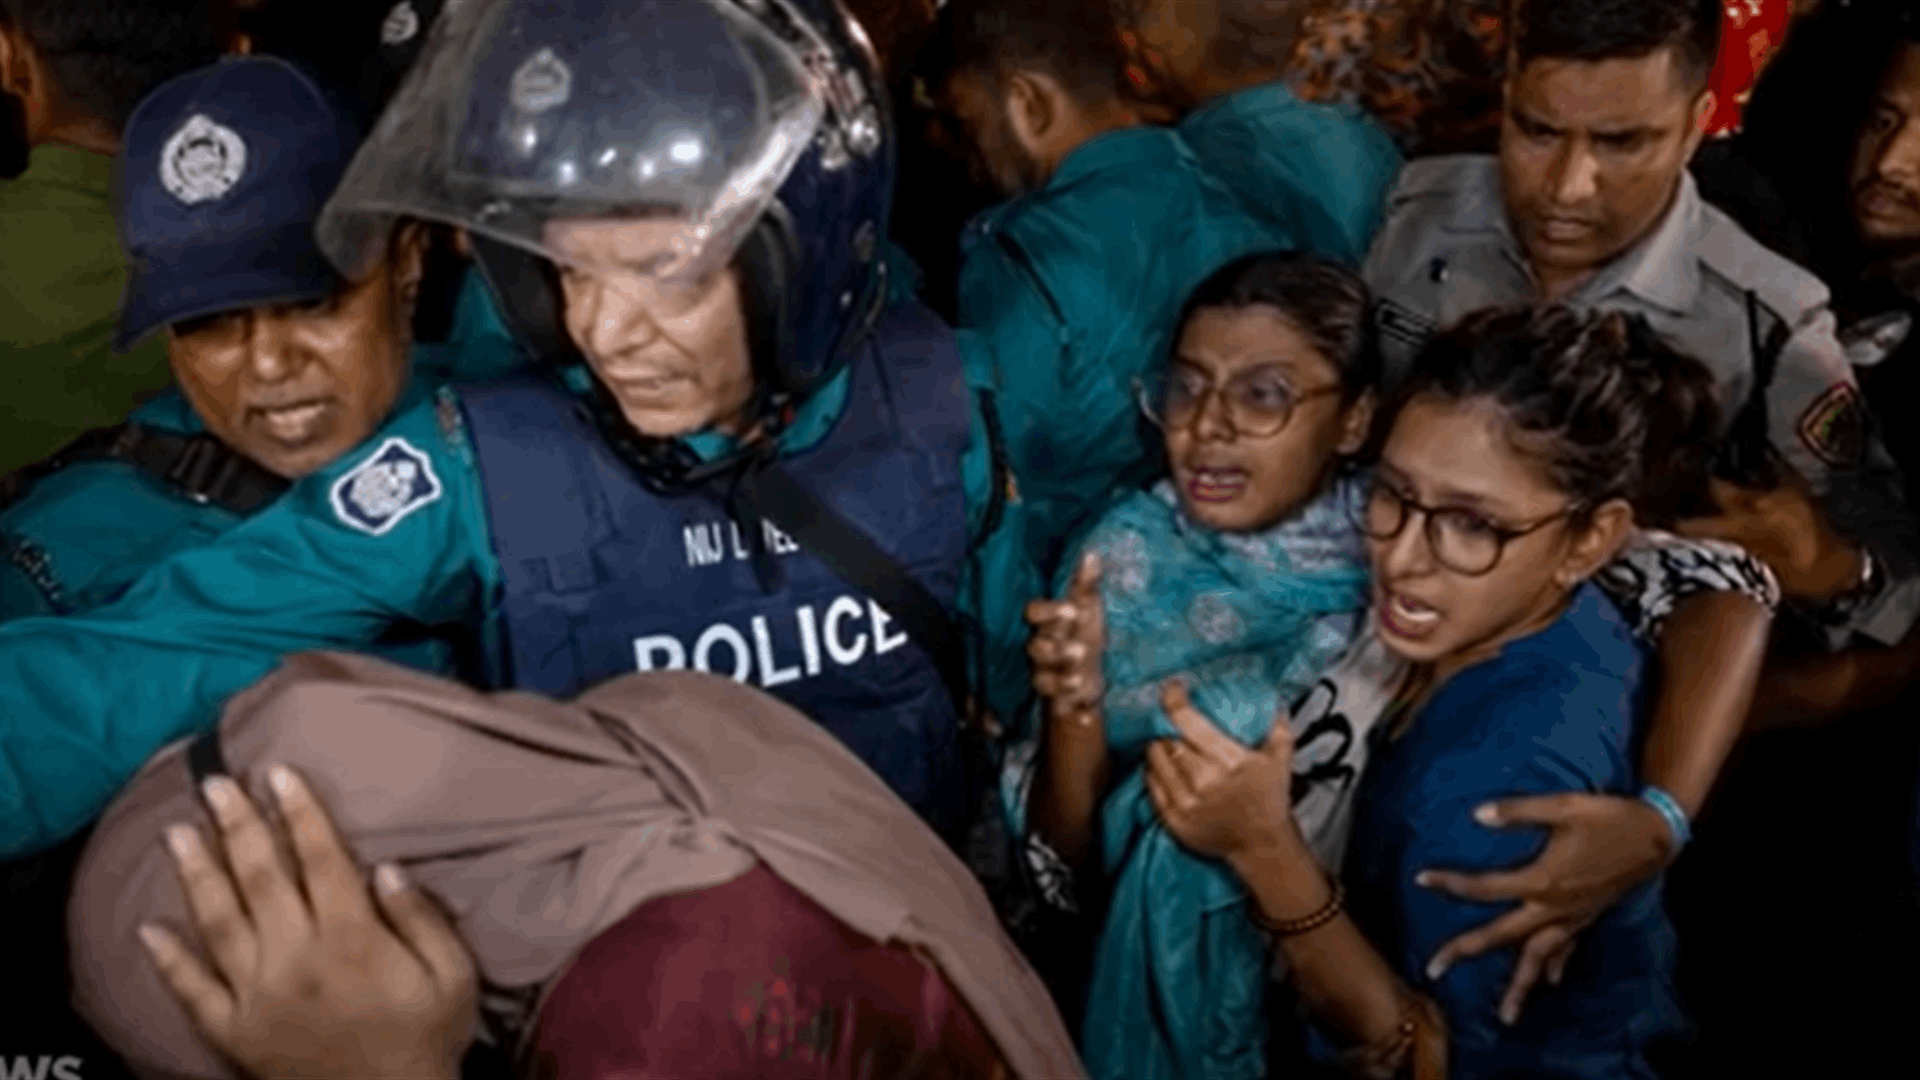 أصوات انفجارات وألسنة نار ملأت المكان... مأساة داخل أحد المطاعم في بنغلادش ومقتل 46 شخصًا على الأقل! (فيديو)